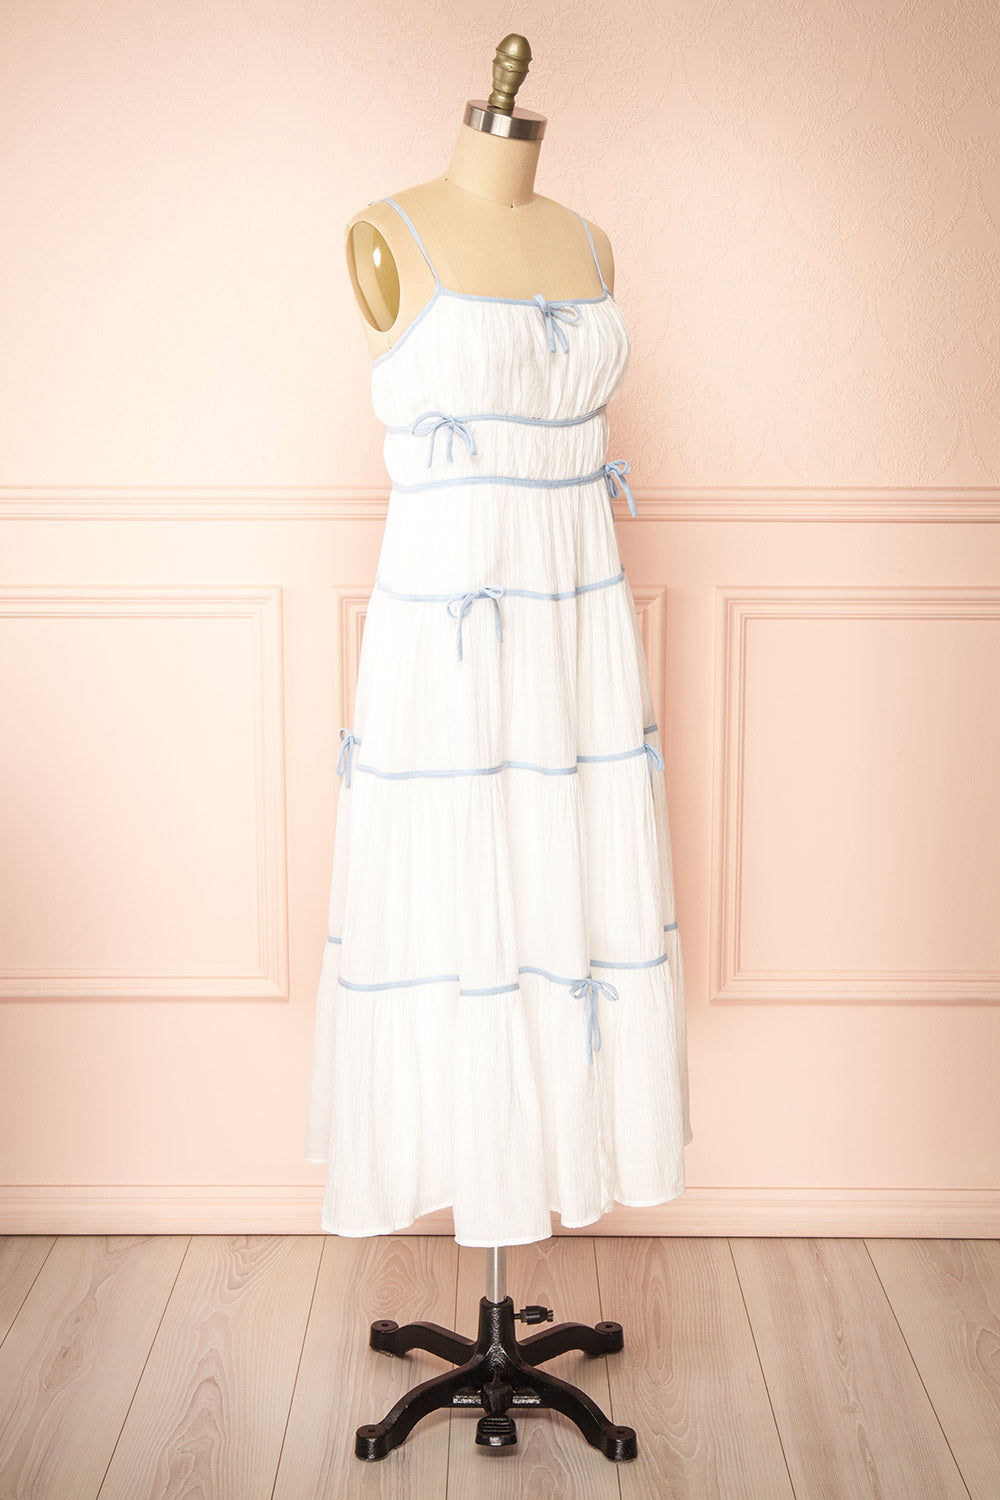 Juliriel White Midi Dress w/ Blue Ribbons | Boutique 1861 side view